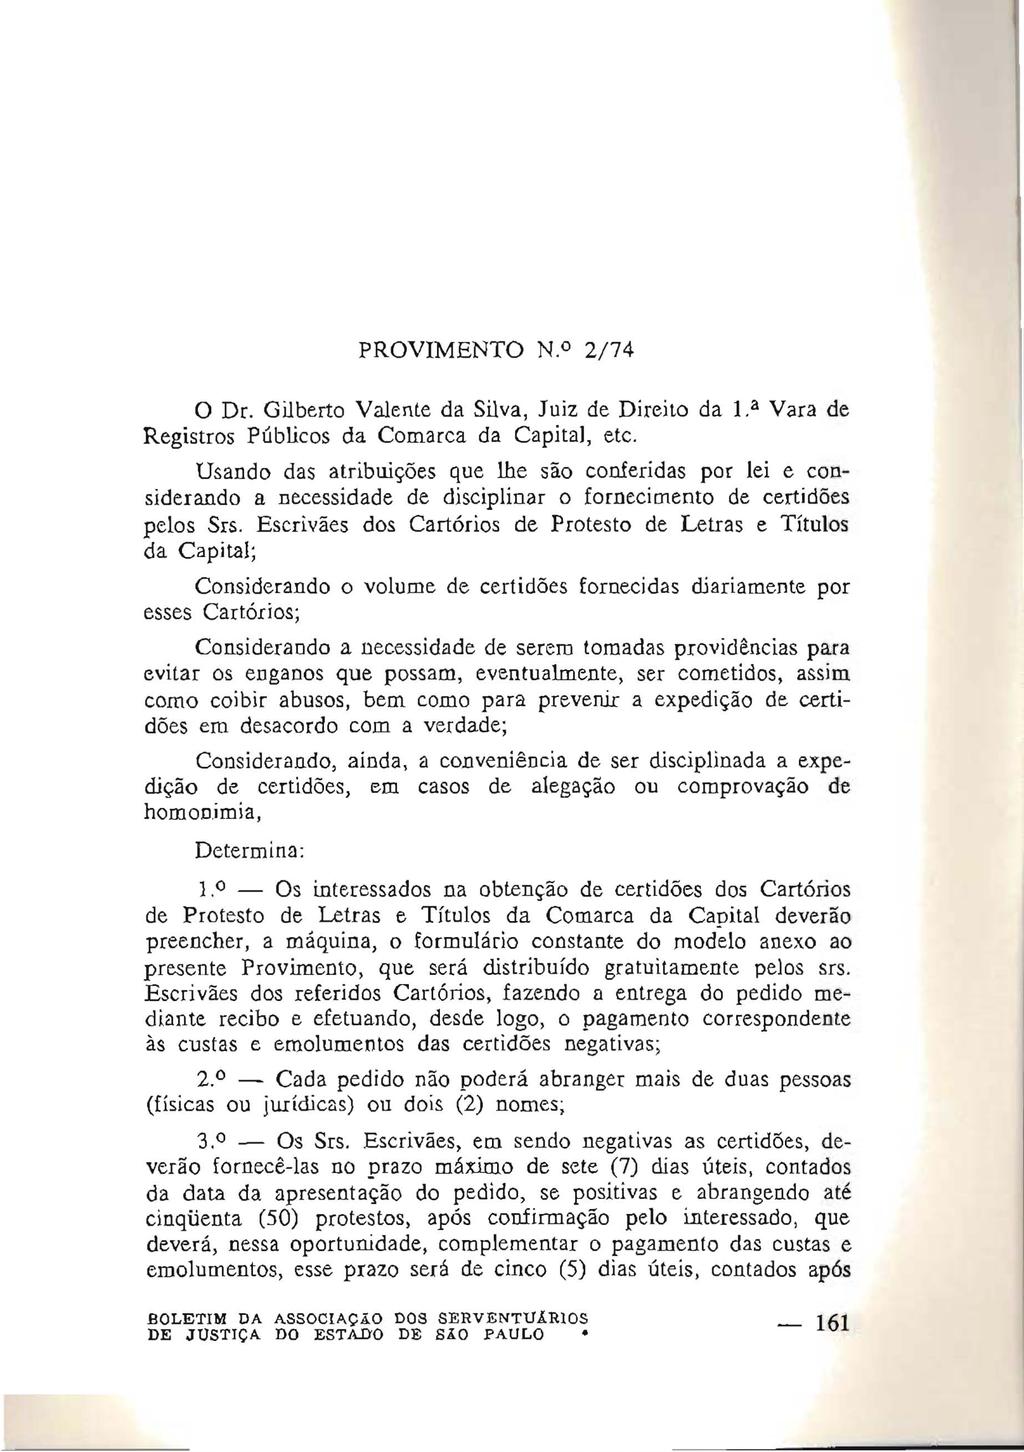 PROVIMENTO N.o 2/74 o Dr. Gilberto Valente da Silva, Juiz de Direito da 1. a Vara de Registros Públicos da Comarca da Capita1, etc.